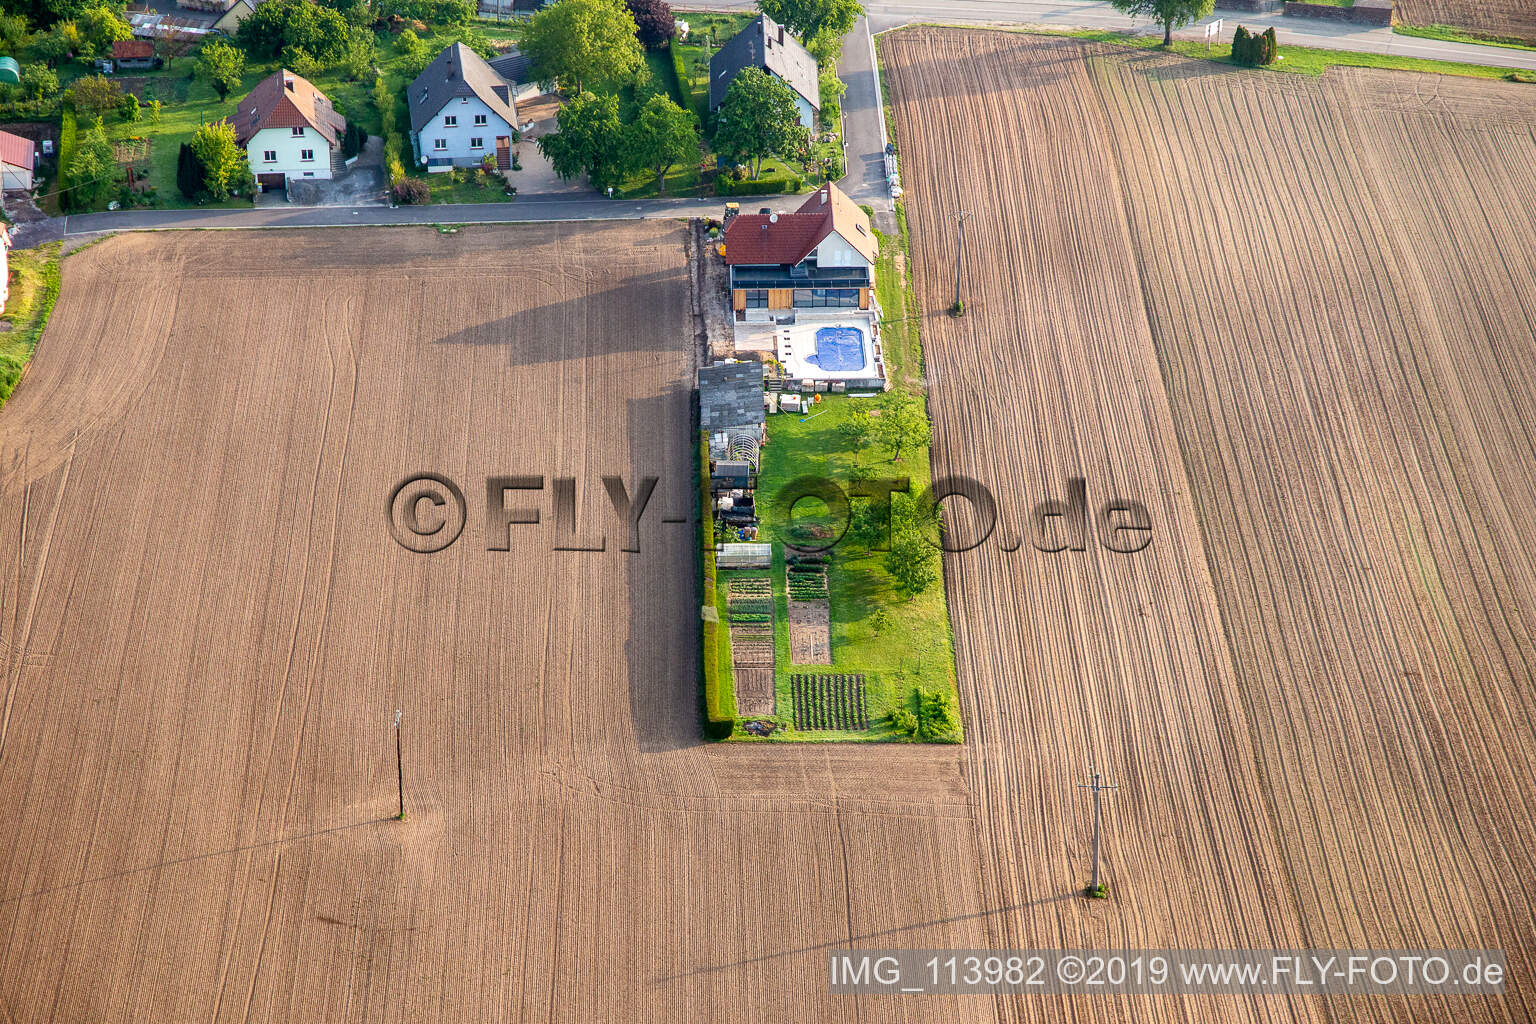 Salmbach im Bundesland Bas-Rhin, Frankreich von einer Drohne aus